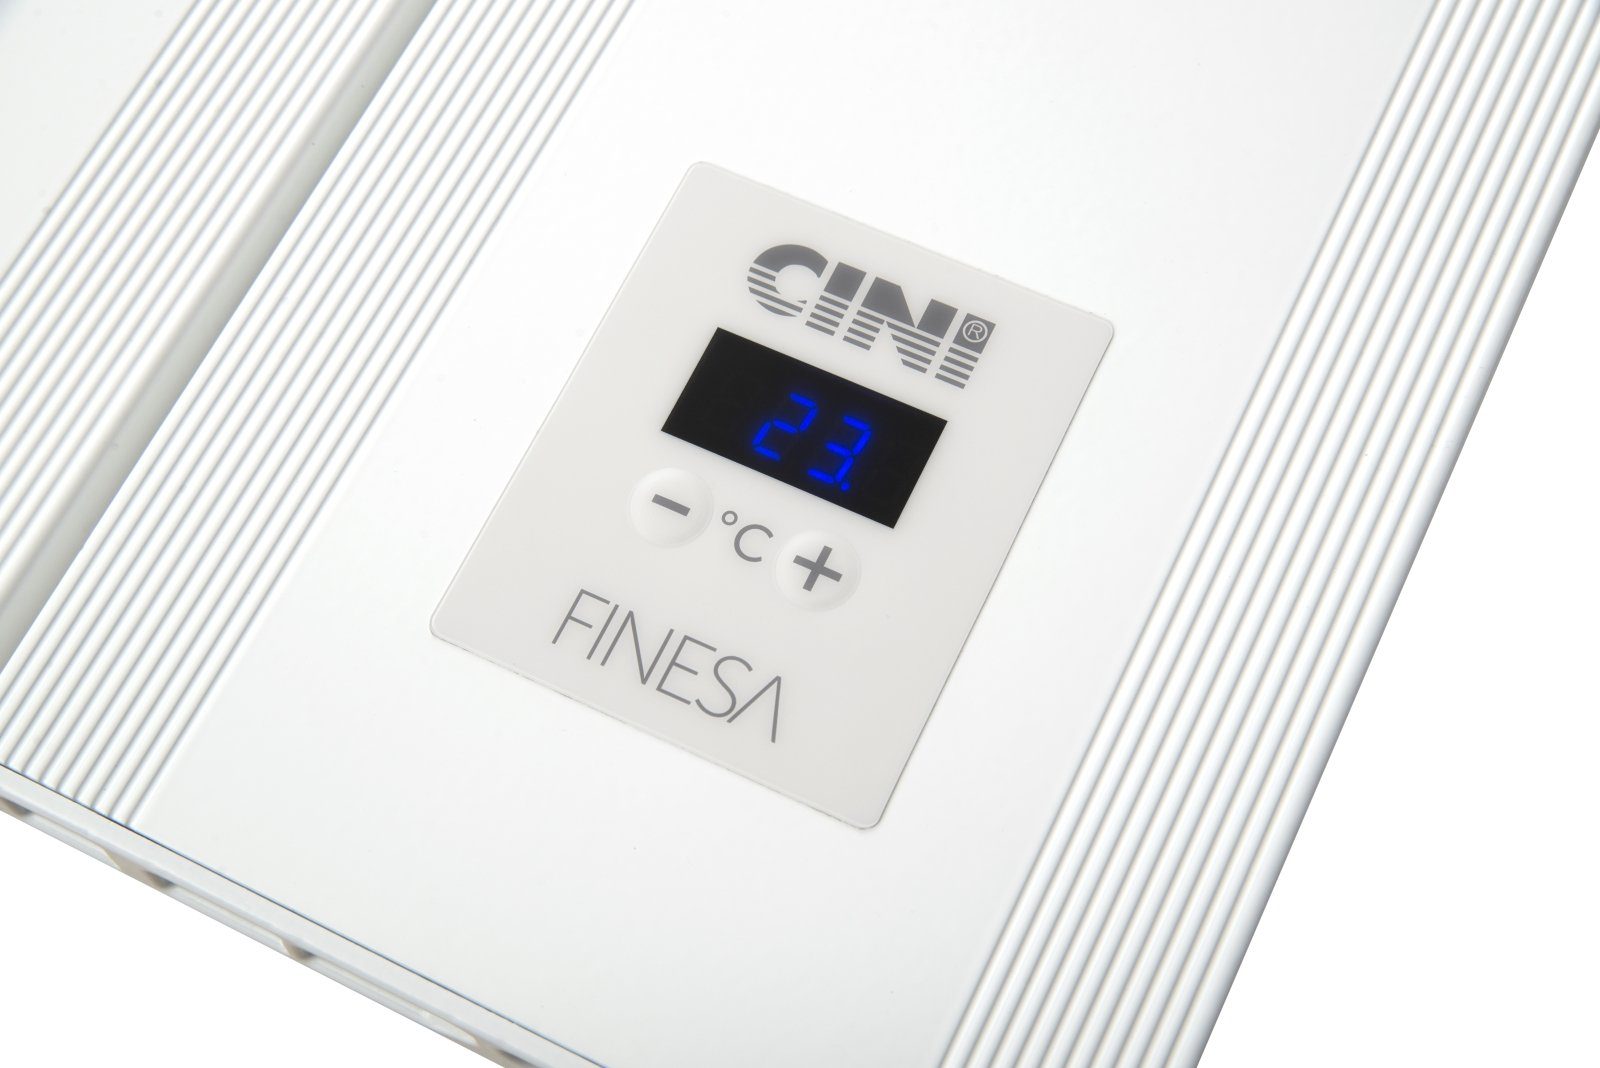 GARANTIE Wärmeabgabe Smarte Thermostat, mit Jahre 400-1200W, Badheizkörper Weiß Elektrischer 5 Finesa